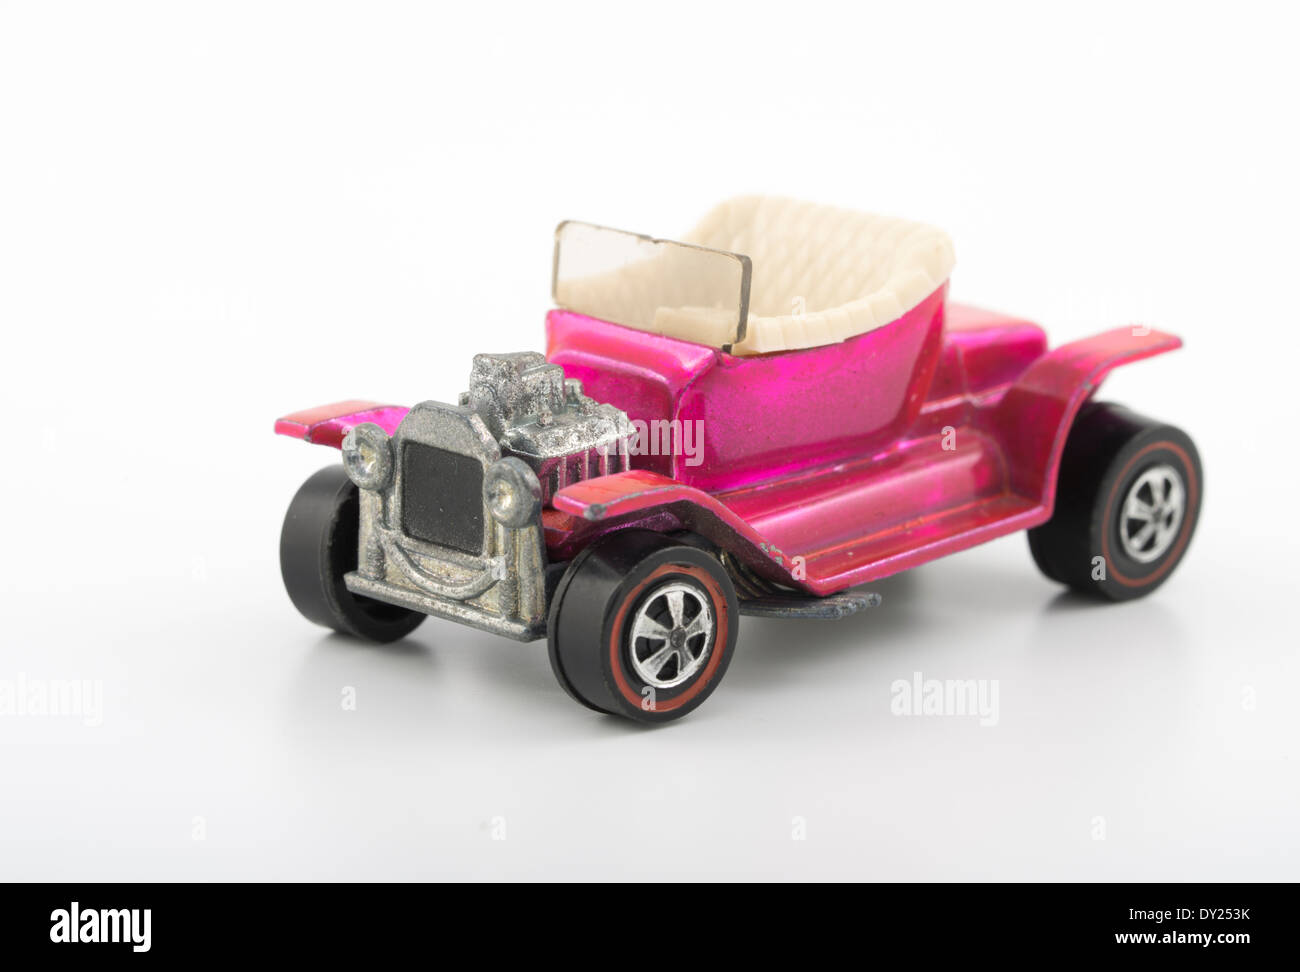 Rosa heißen Heap, Hot Wheels-Druckguss Spielzeugautos von Mattel 1968 mit Spectraflame Lackierung Stockfoto